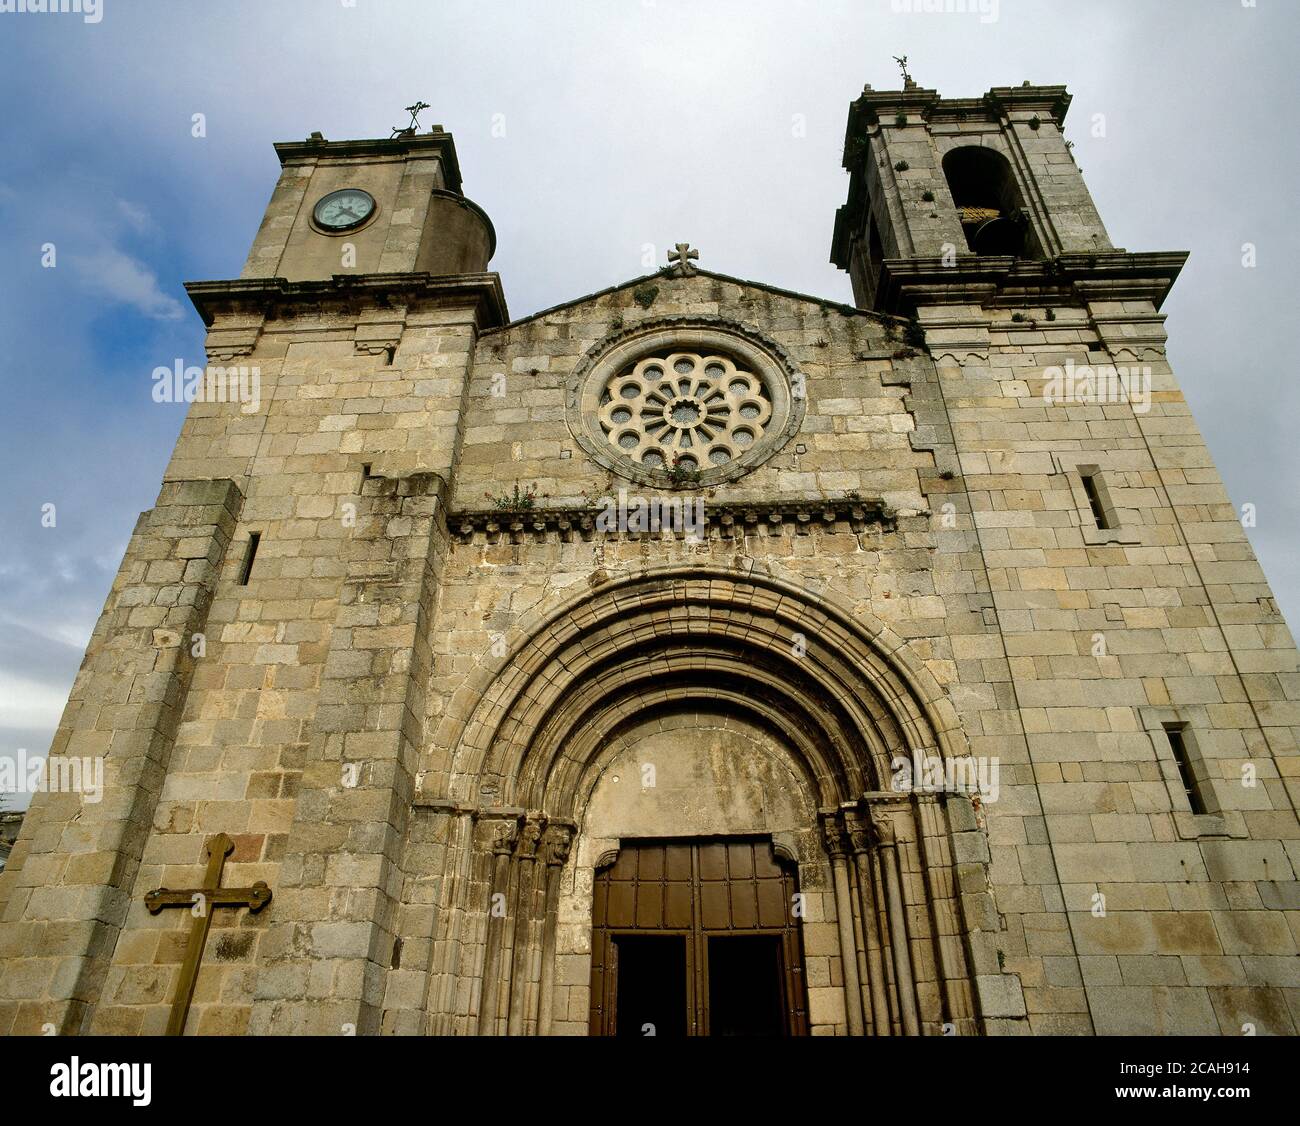 Spanien, Galicien, Provinz Lugo, Viveiro. Kirche Santa Maria del Campo (Unsere Liebe Frau von den Feldern). Es wurde in der zweiten Hälfte des 12. Jahrhunderts im romanischen Stil erbaut. Hauptfassade. Stockfoto